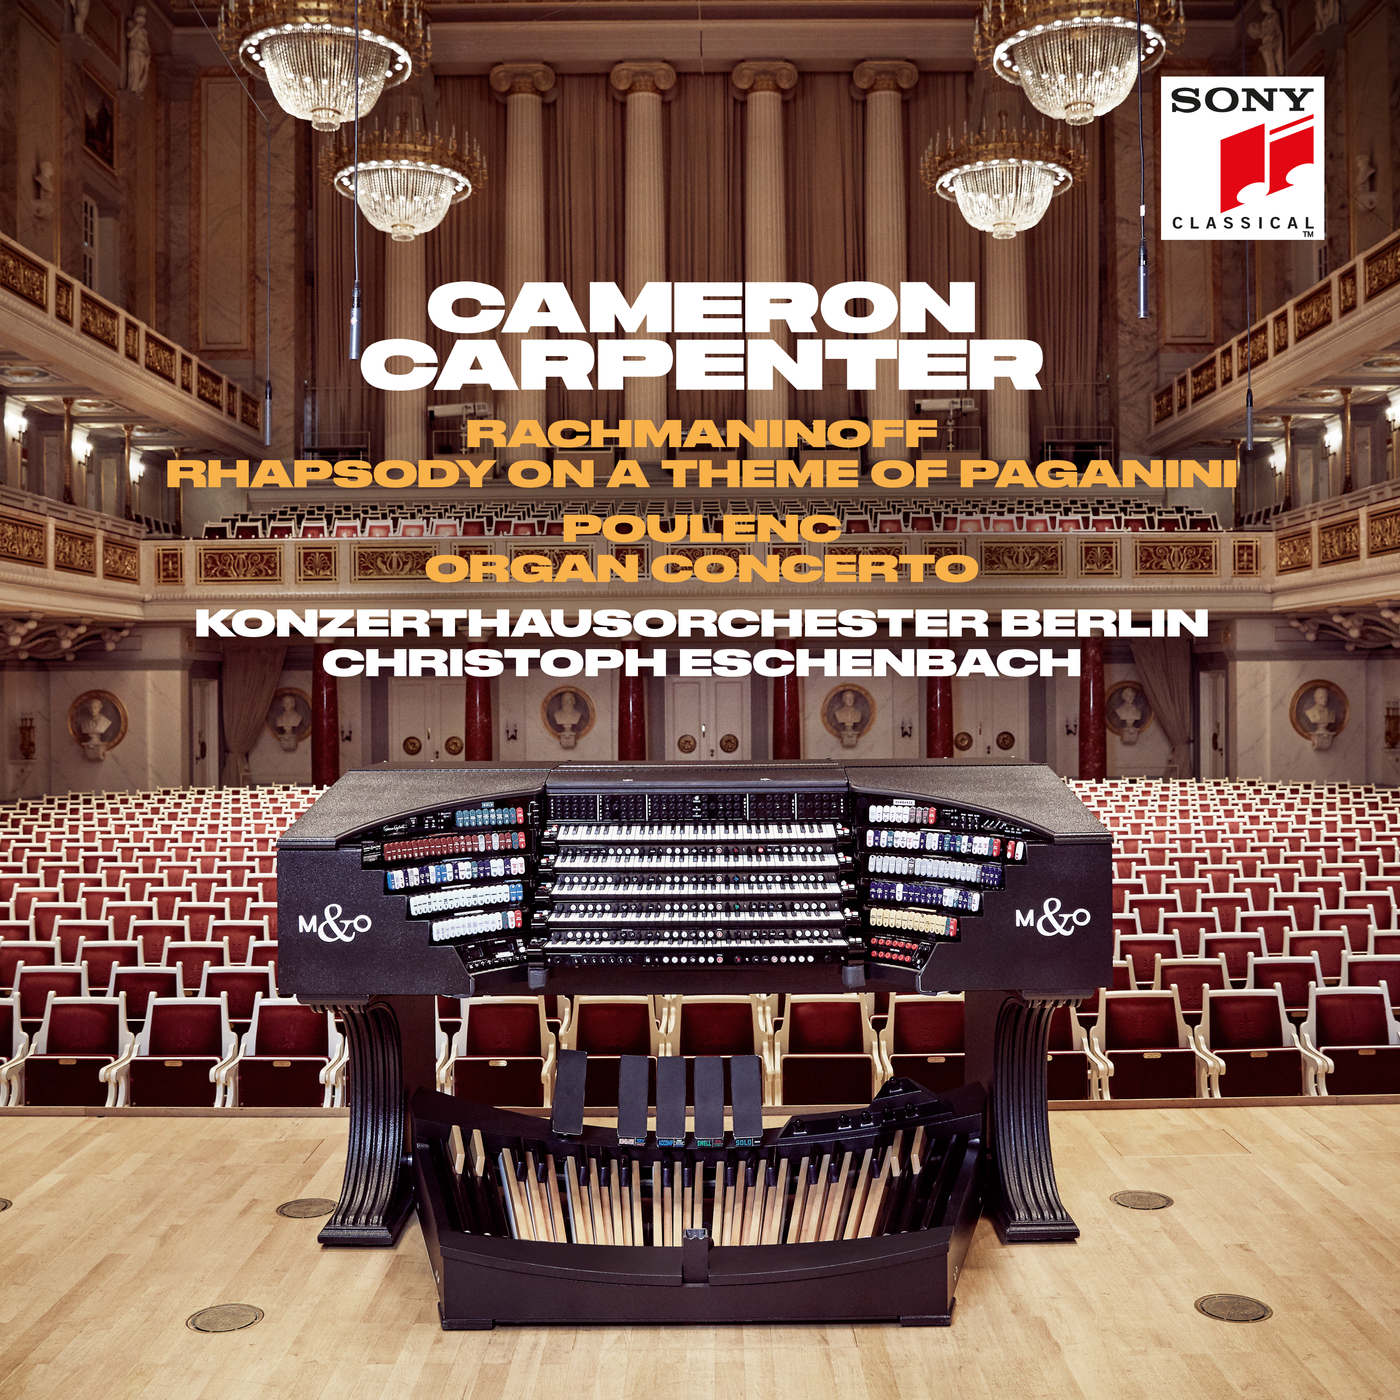 Concerto for Organ, Strings & Timpani in G Minor, FP 93:II. Allegro giocoso